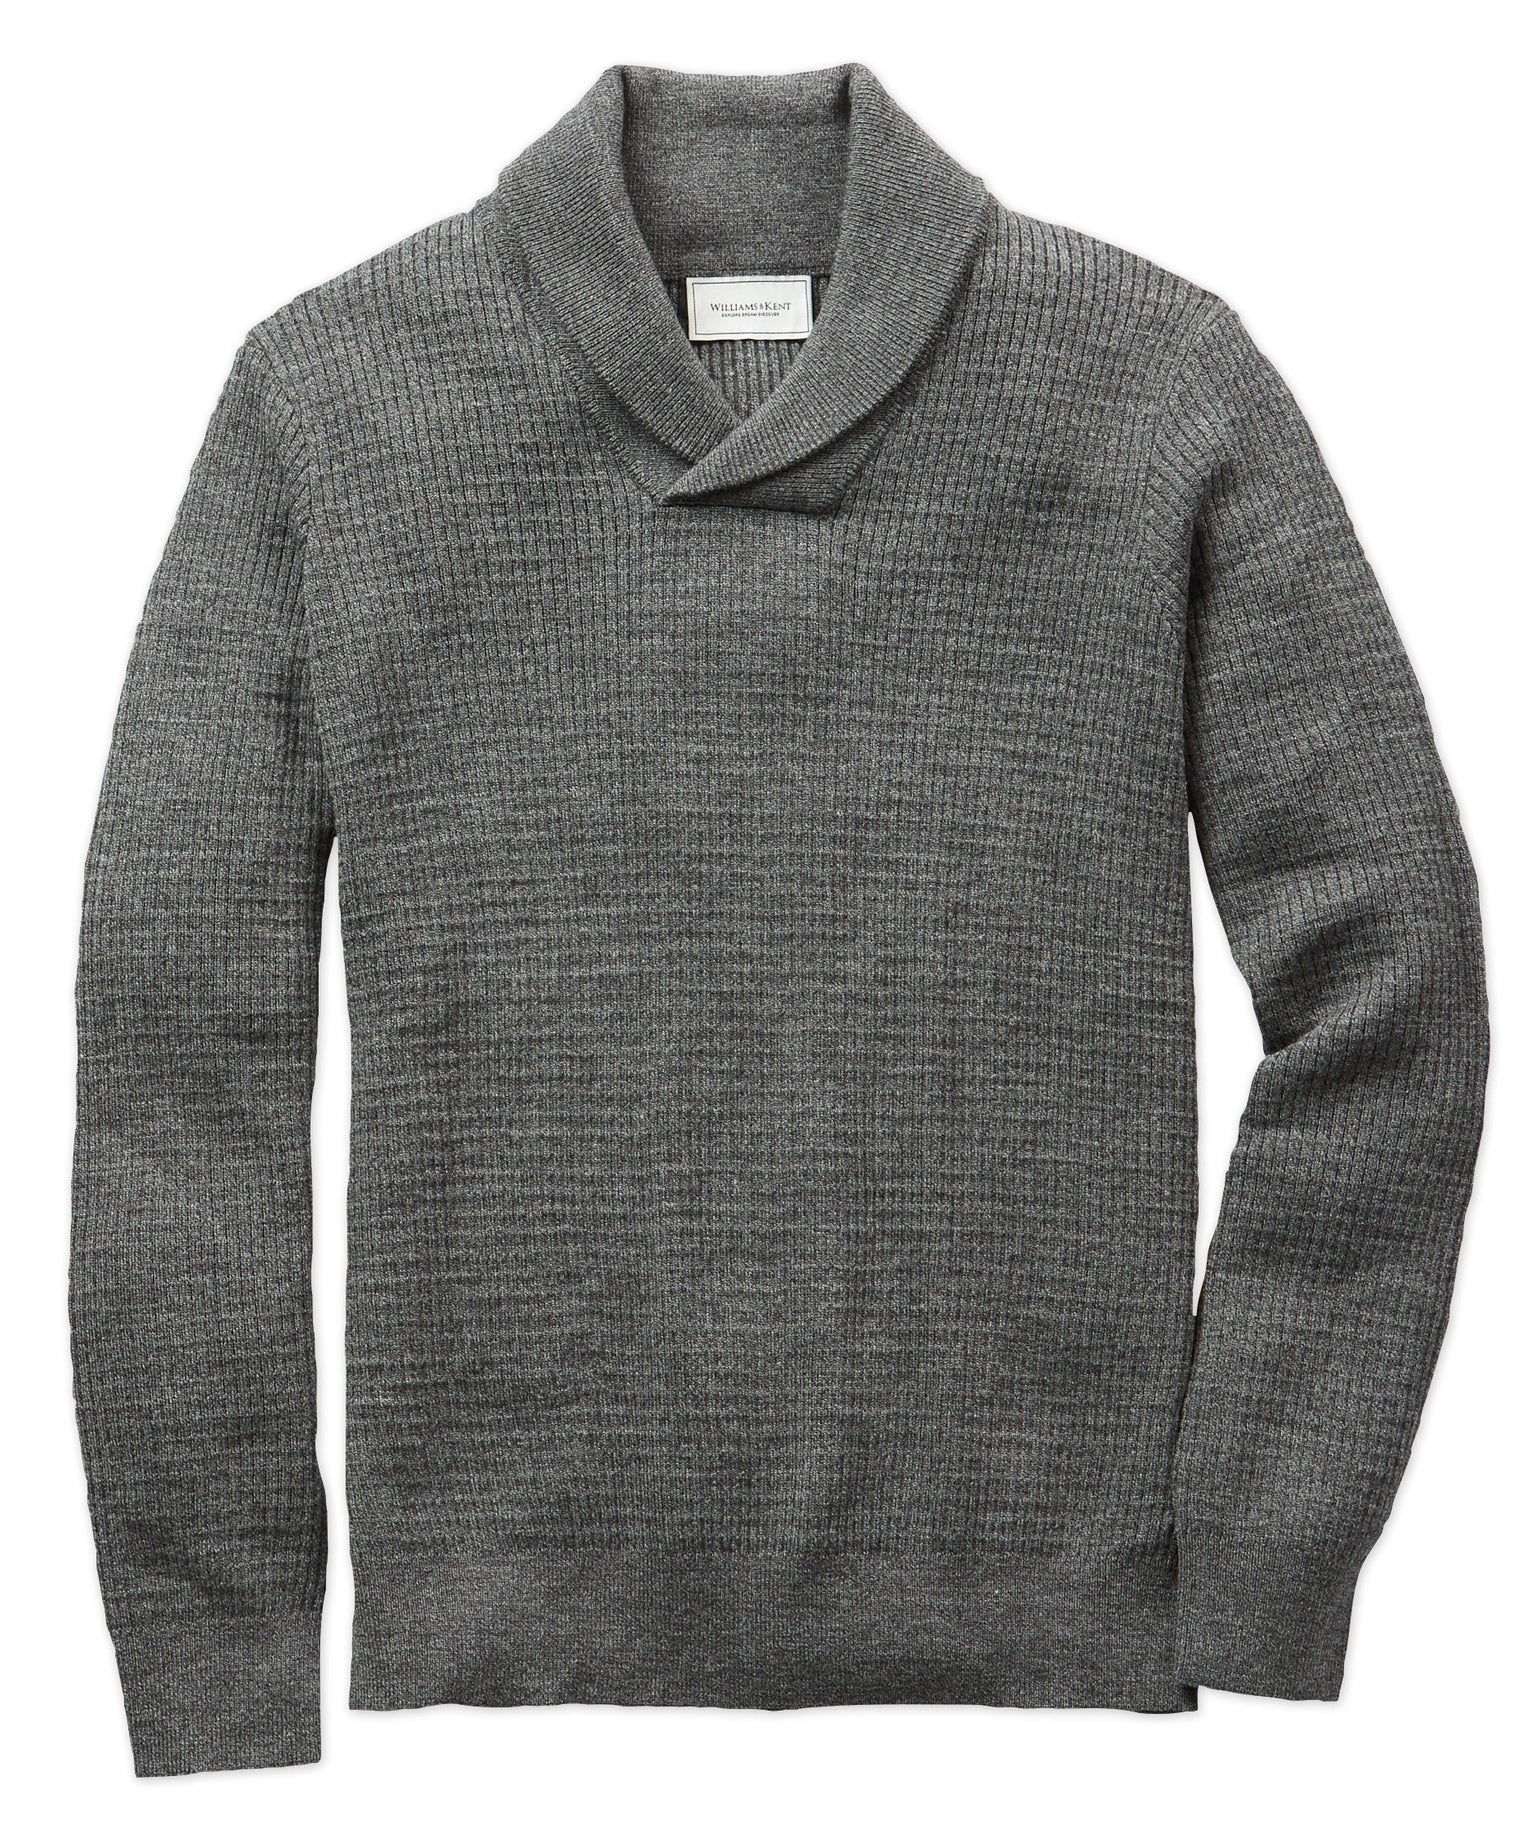 Men’s Luxury Modern Cardigan Sweaters | Williams & Kent Menswear